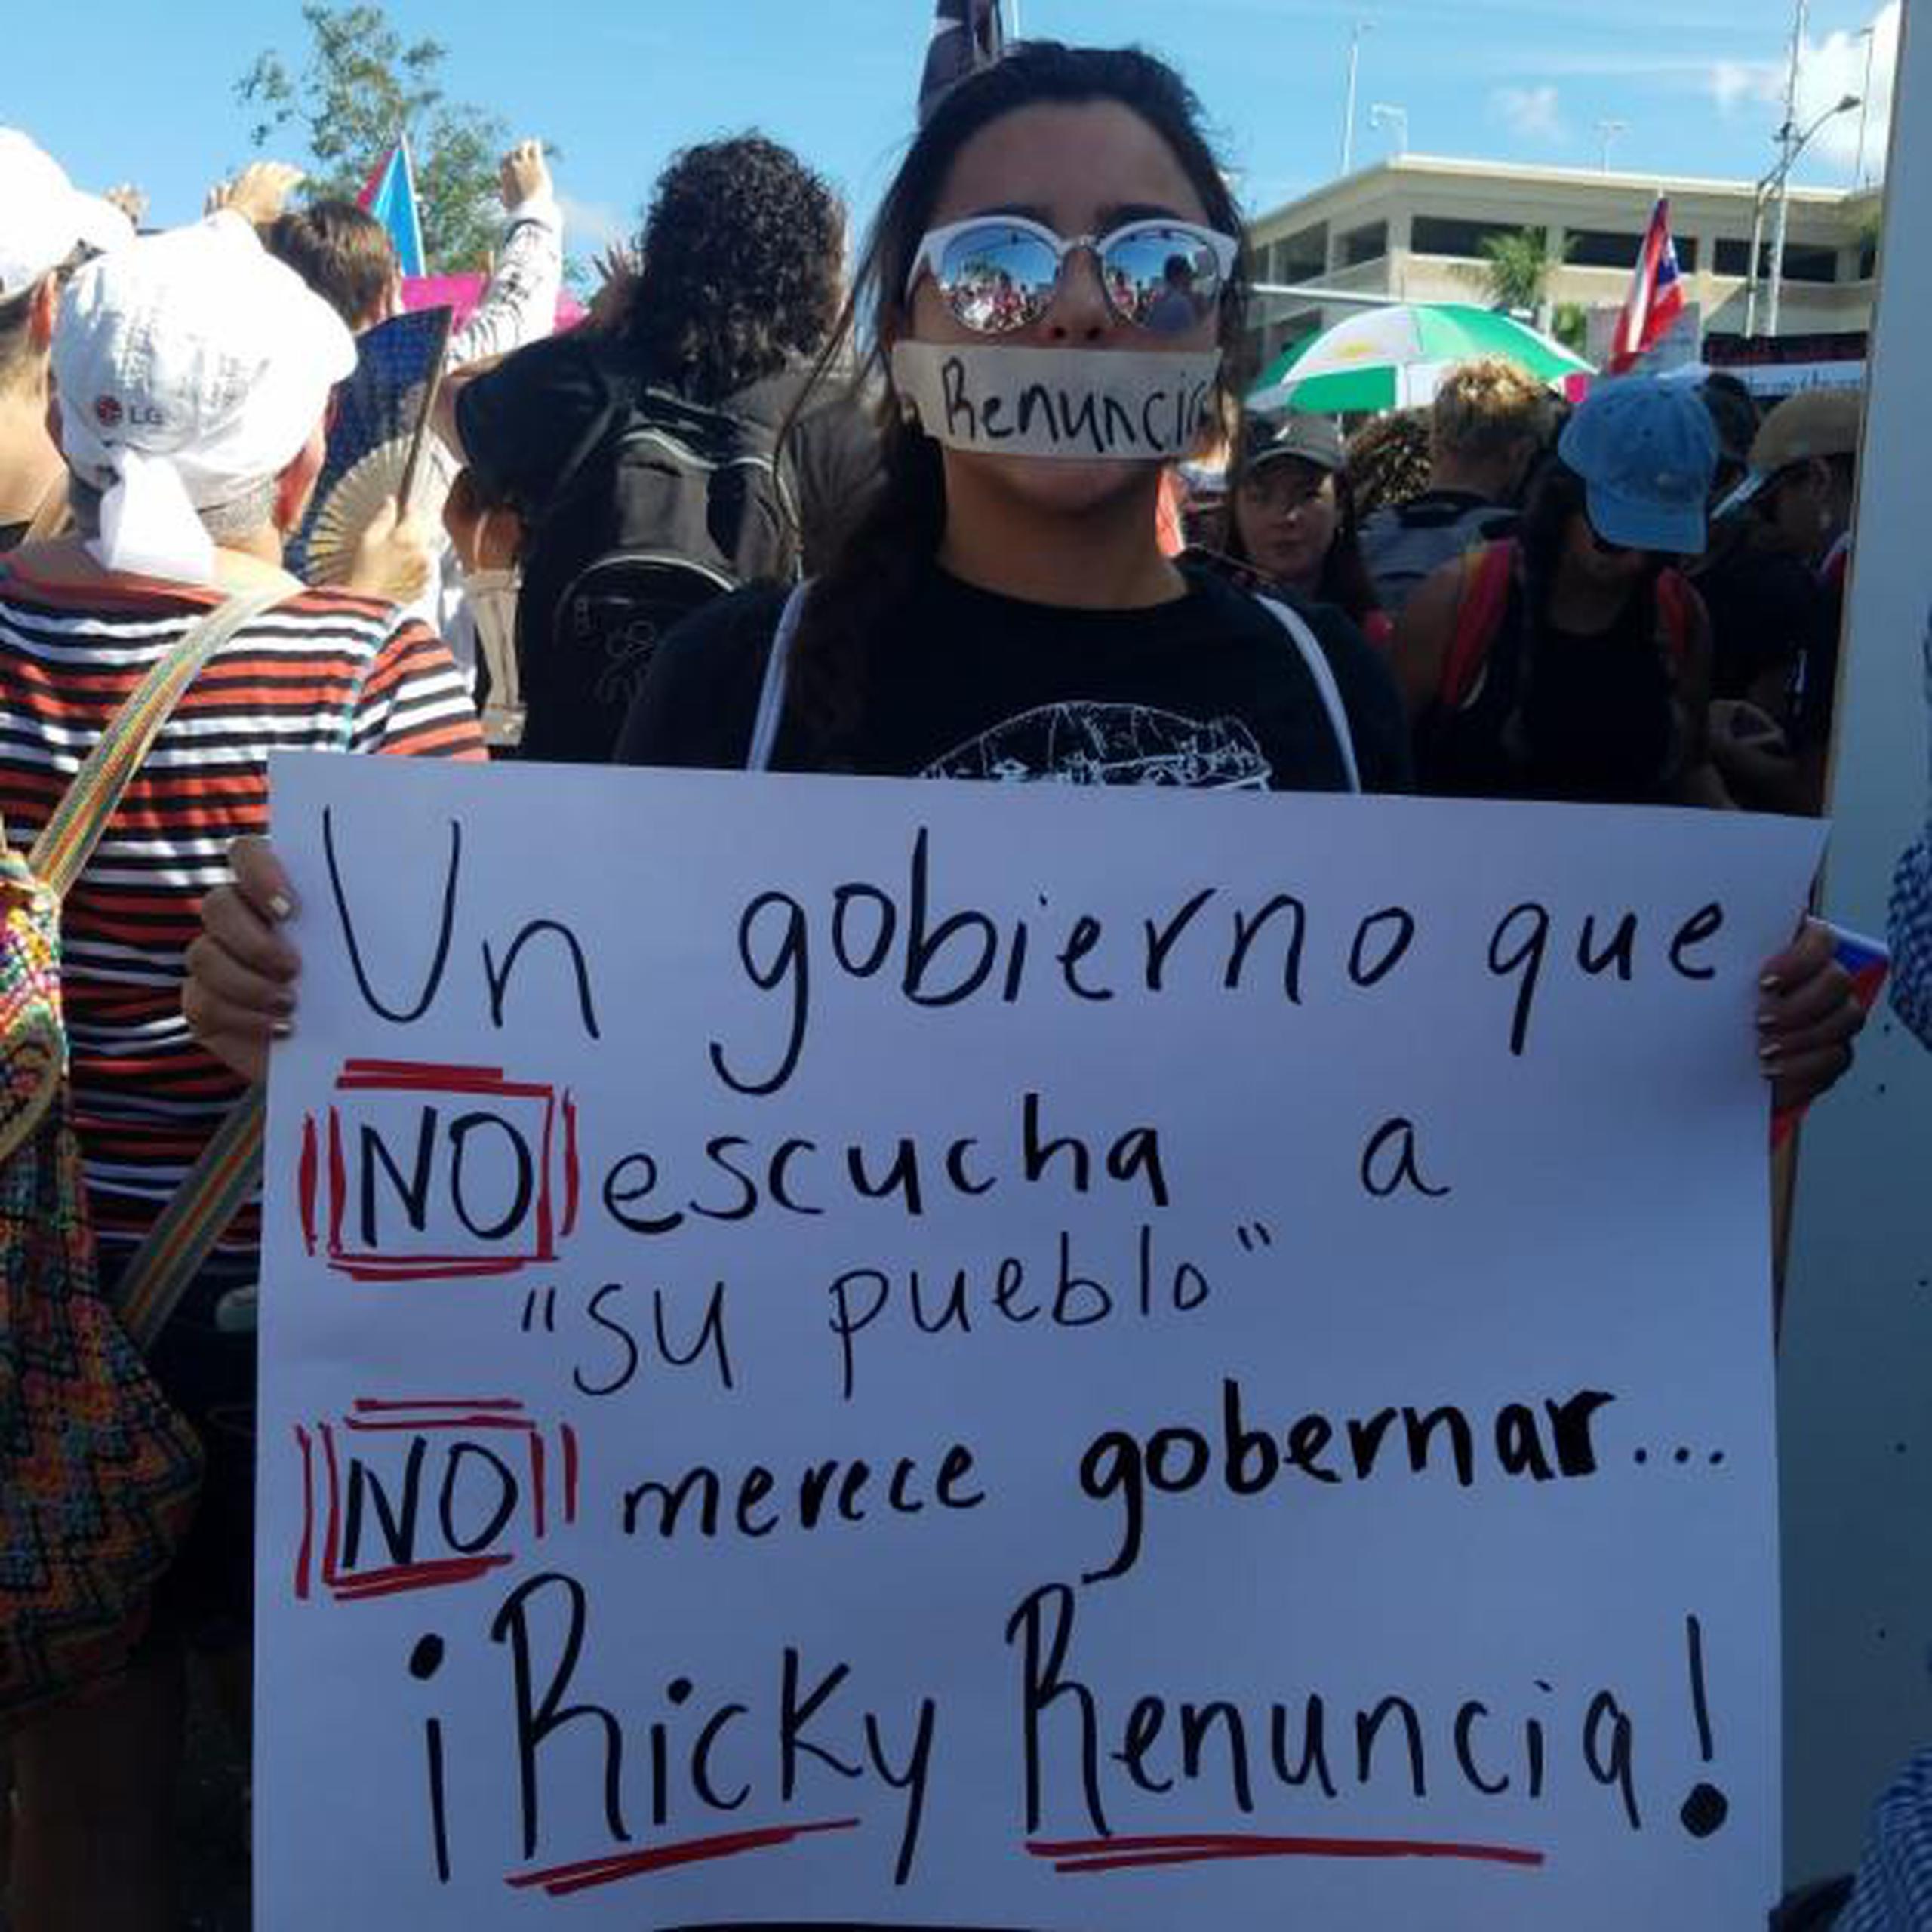 Los manifestantes llegaban ondeando la bandera de la isla, vistiendo camisas que leen "Ricky Renuncia" y cartelones. (Nydia Bauzá/Primera Hora)